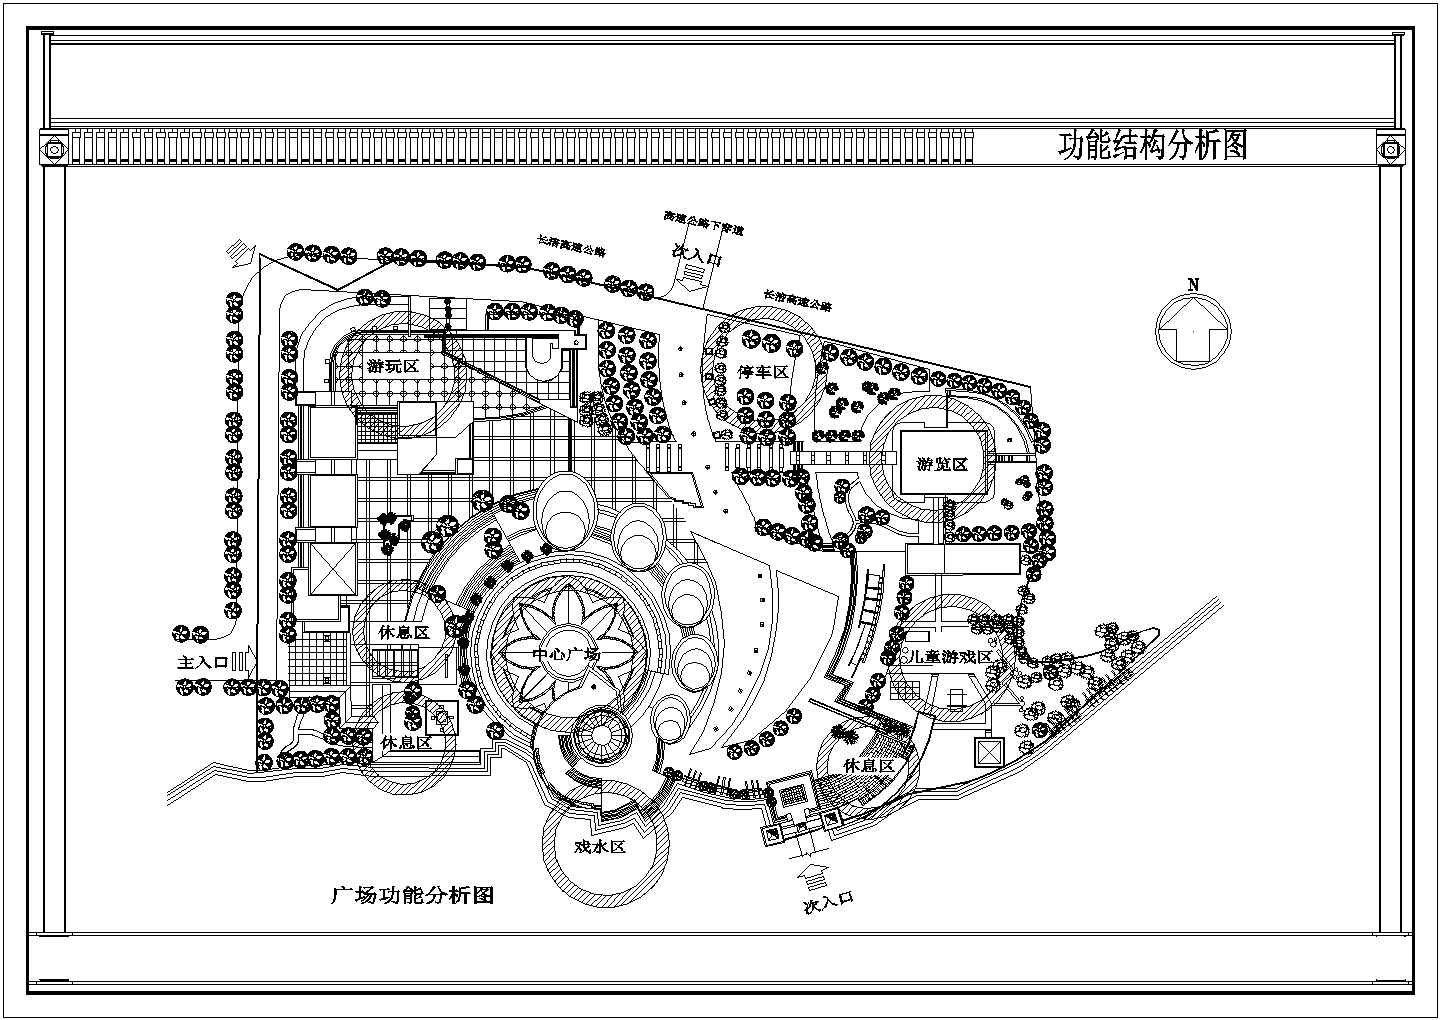 上海某广场修建性规划方案